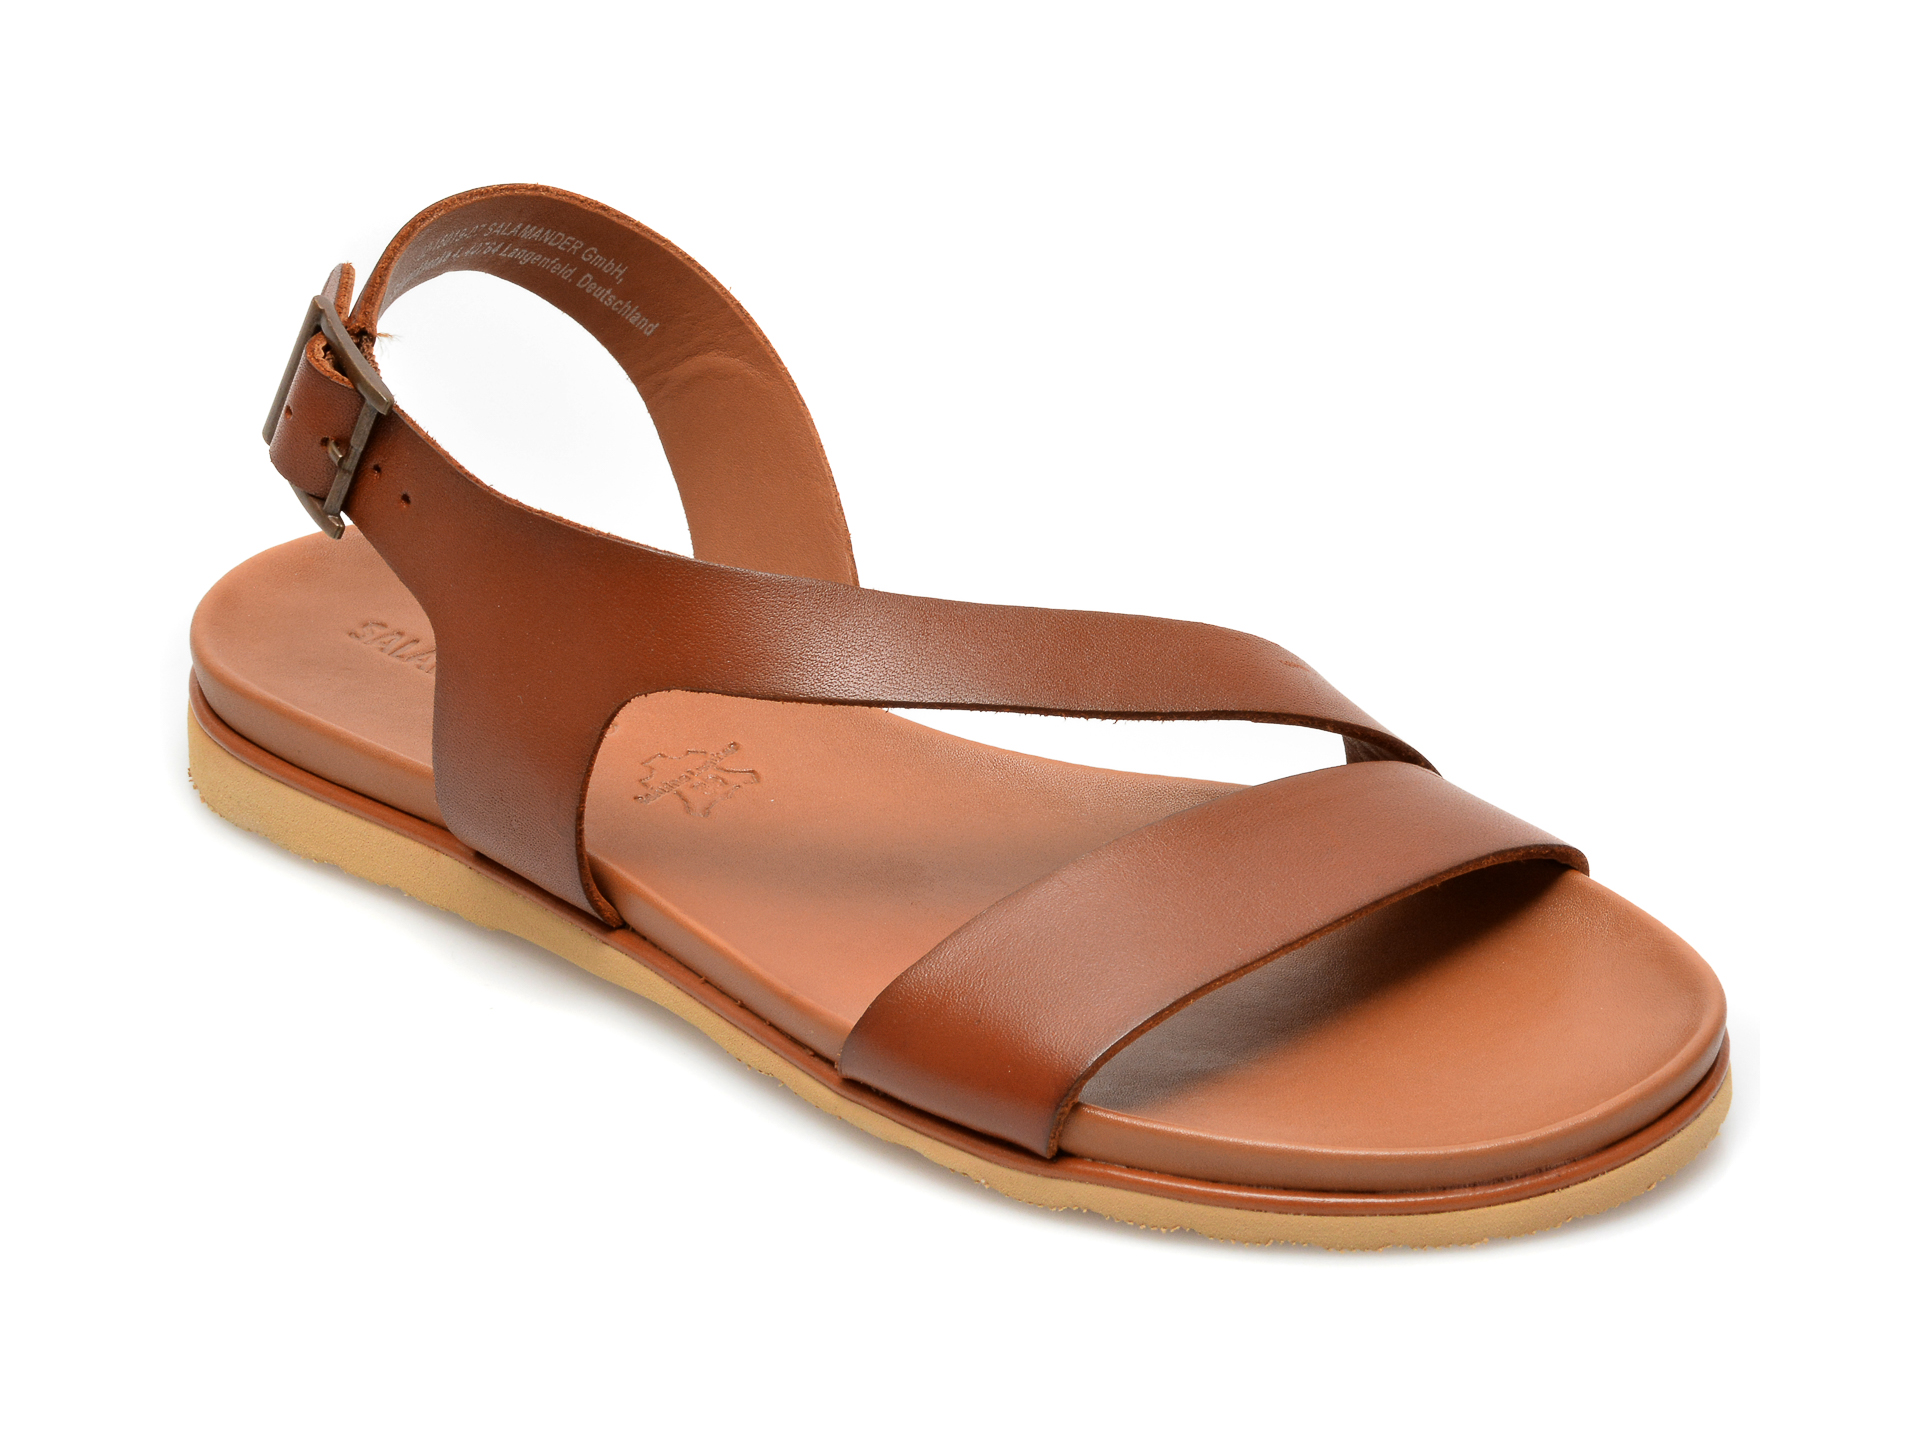 Sandale SALAMANDER maro, 15019, din piele naturala